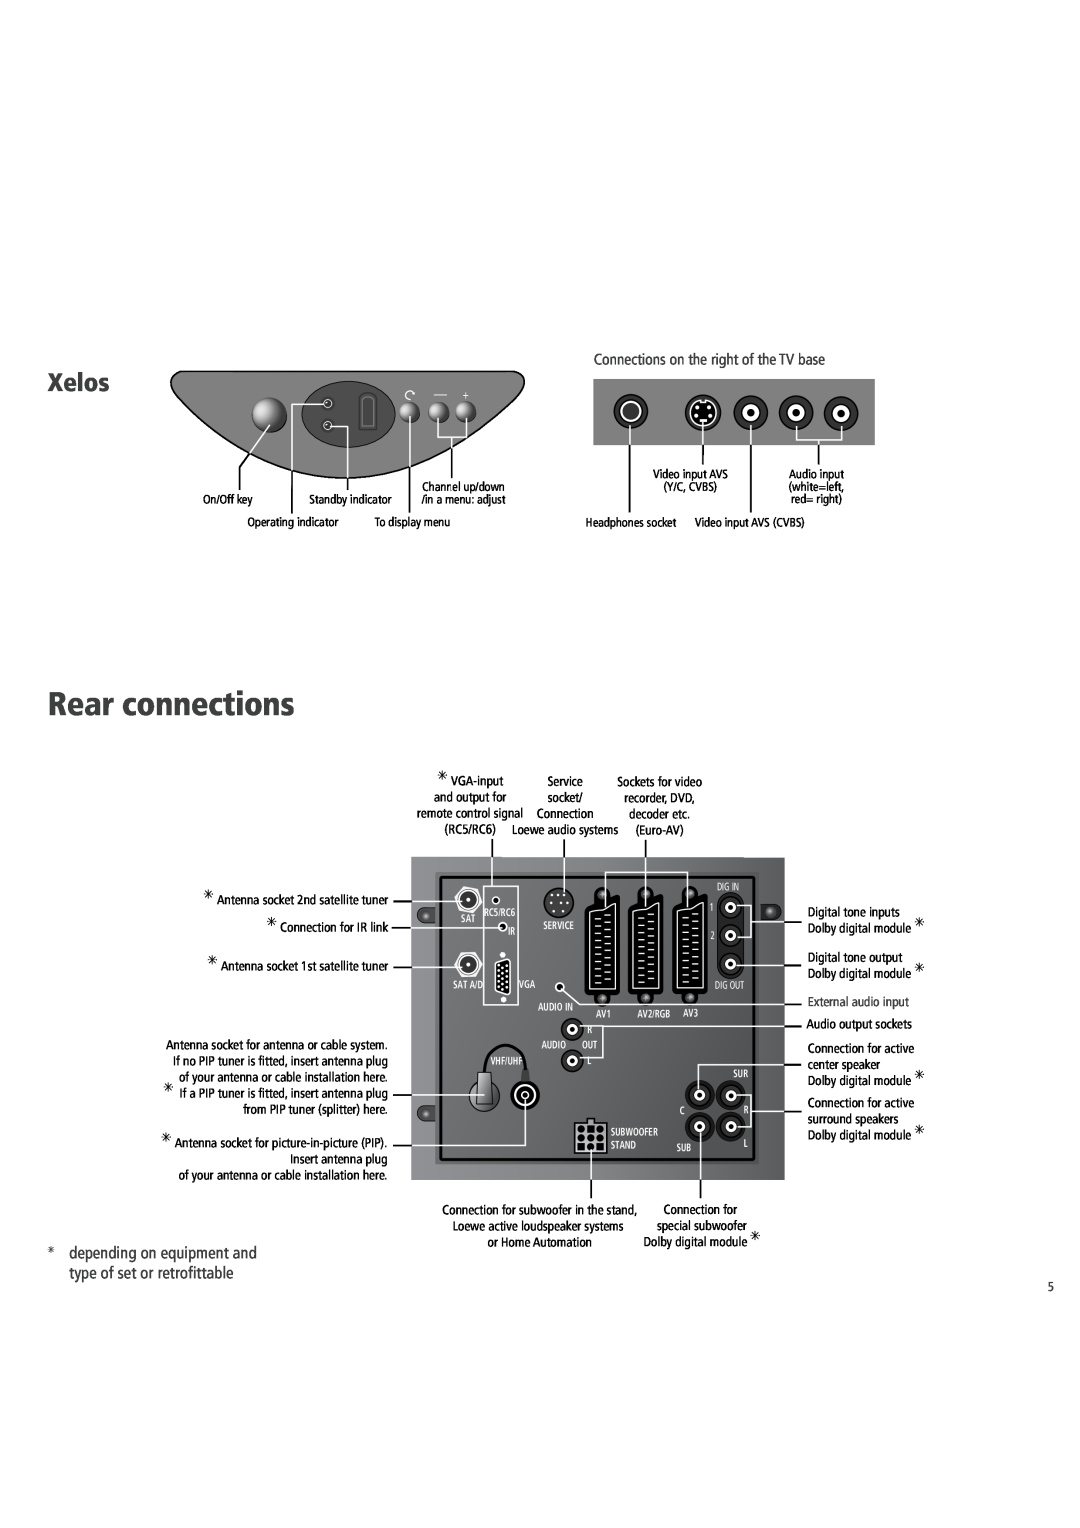 Loewe 3781 ZW, 3981 ZW, 32, 6381 ZW, 5381 ZW Rear connections, Xelos, External audio input, On/Off key, To display menu 